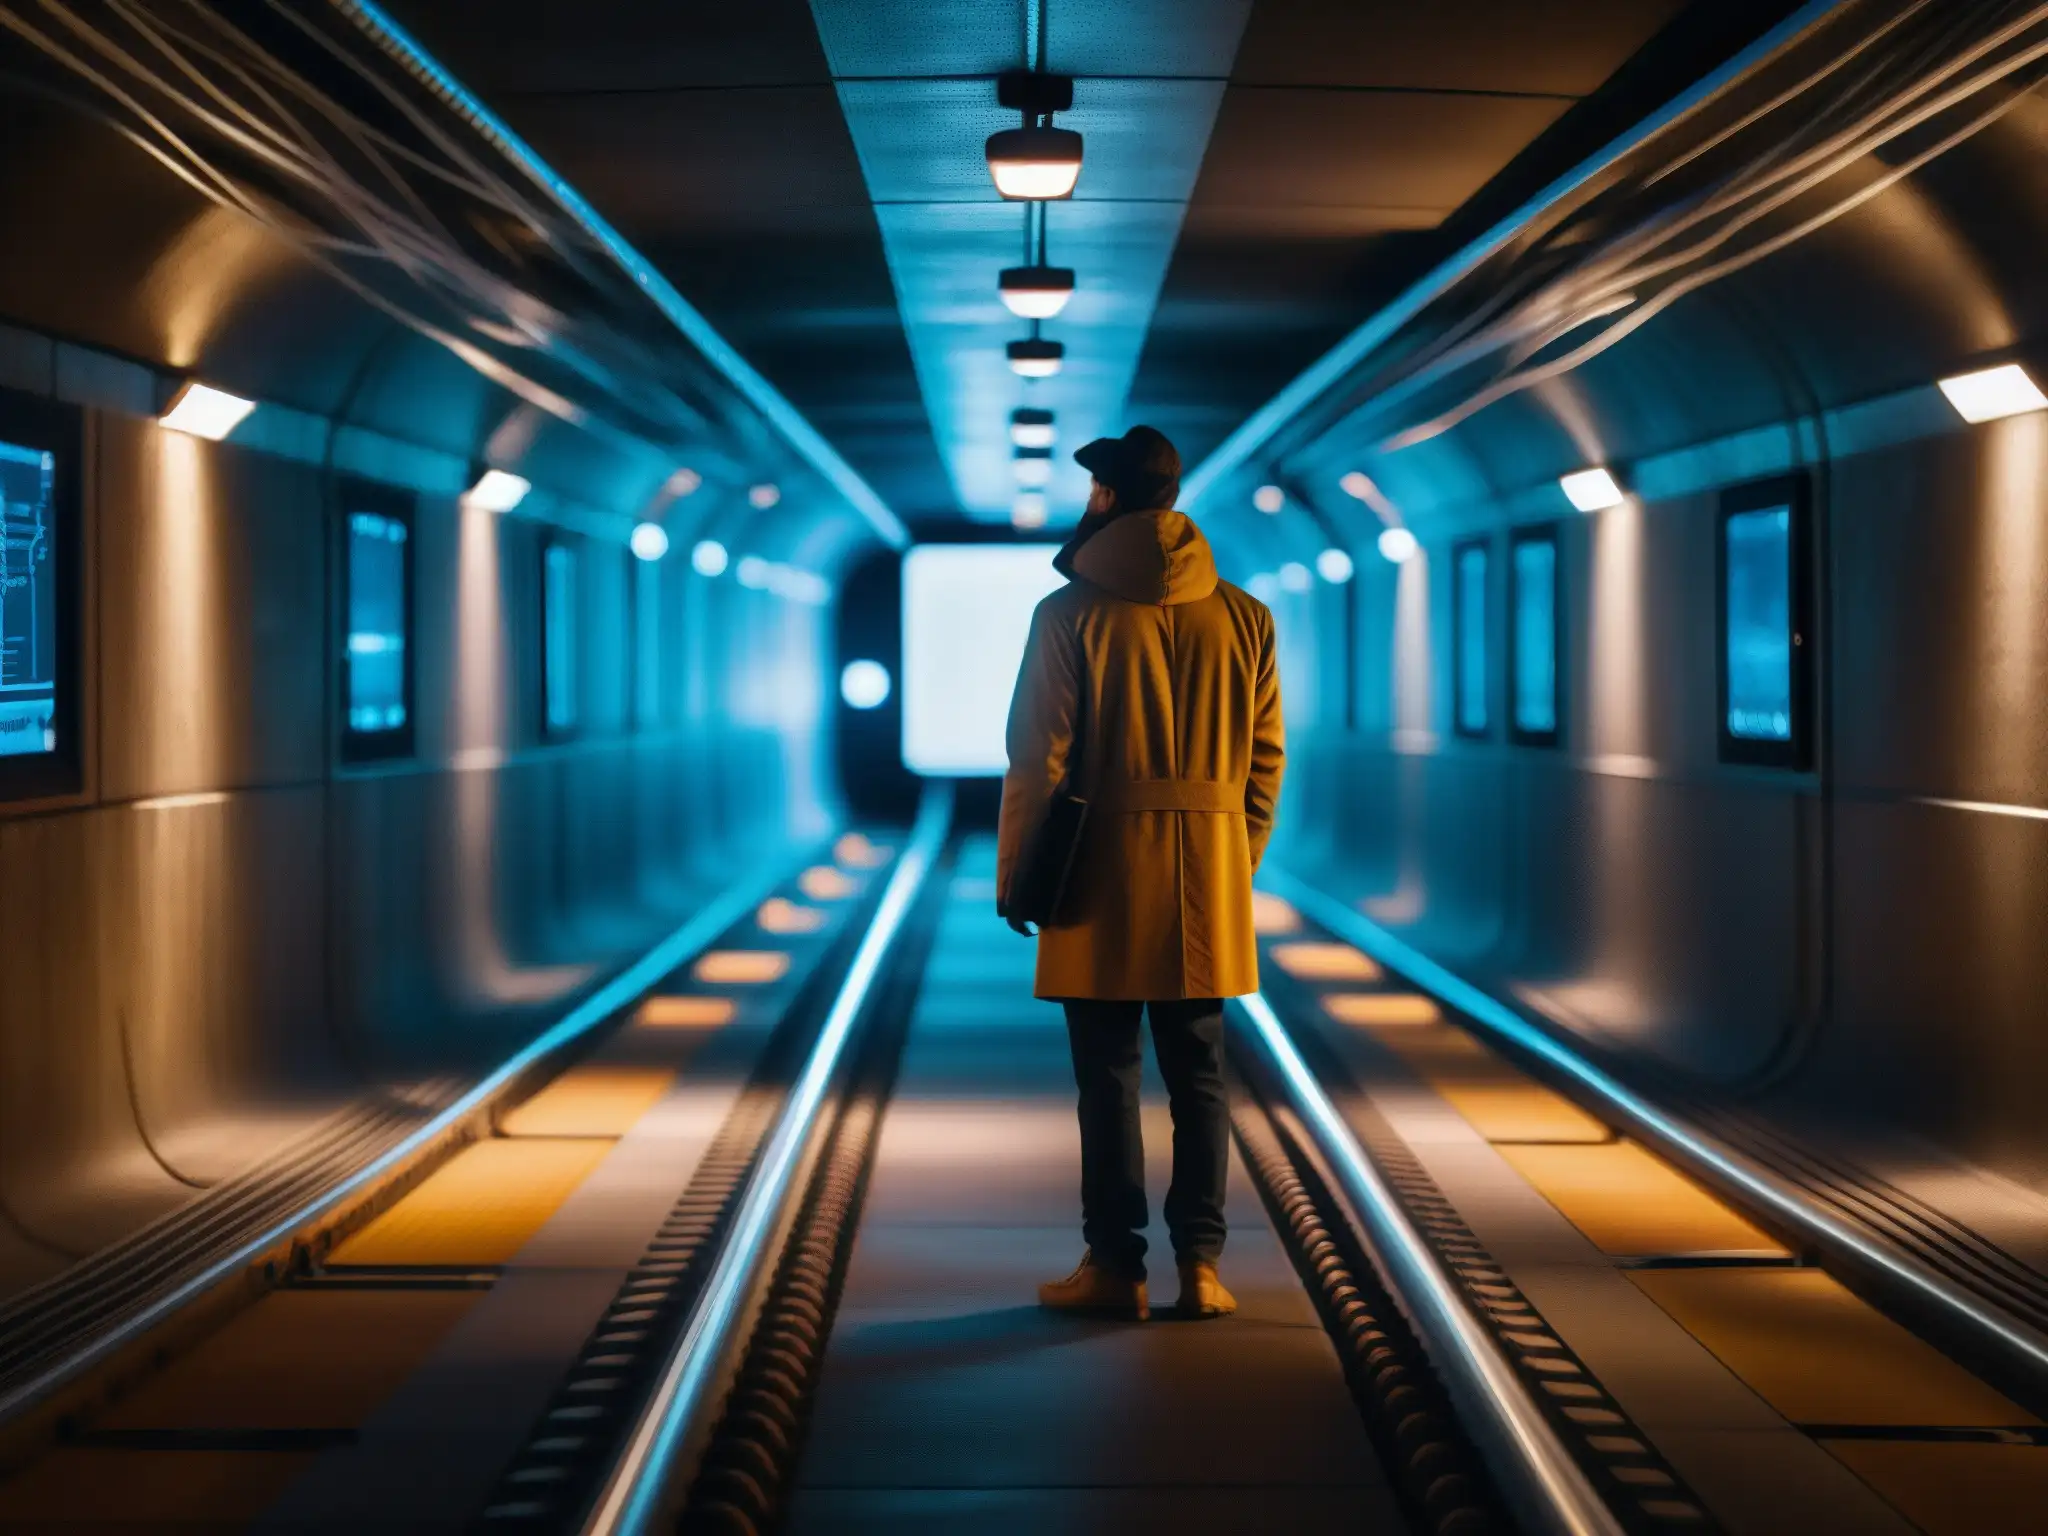 En un túnel subterráneo con una luz tenue, una figura rodeada de pantallas y cables, zonas ocultas de internet existen